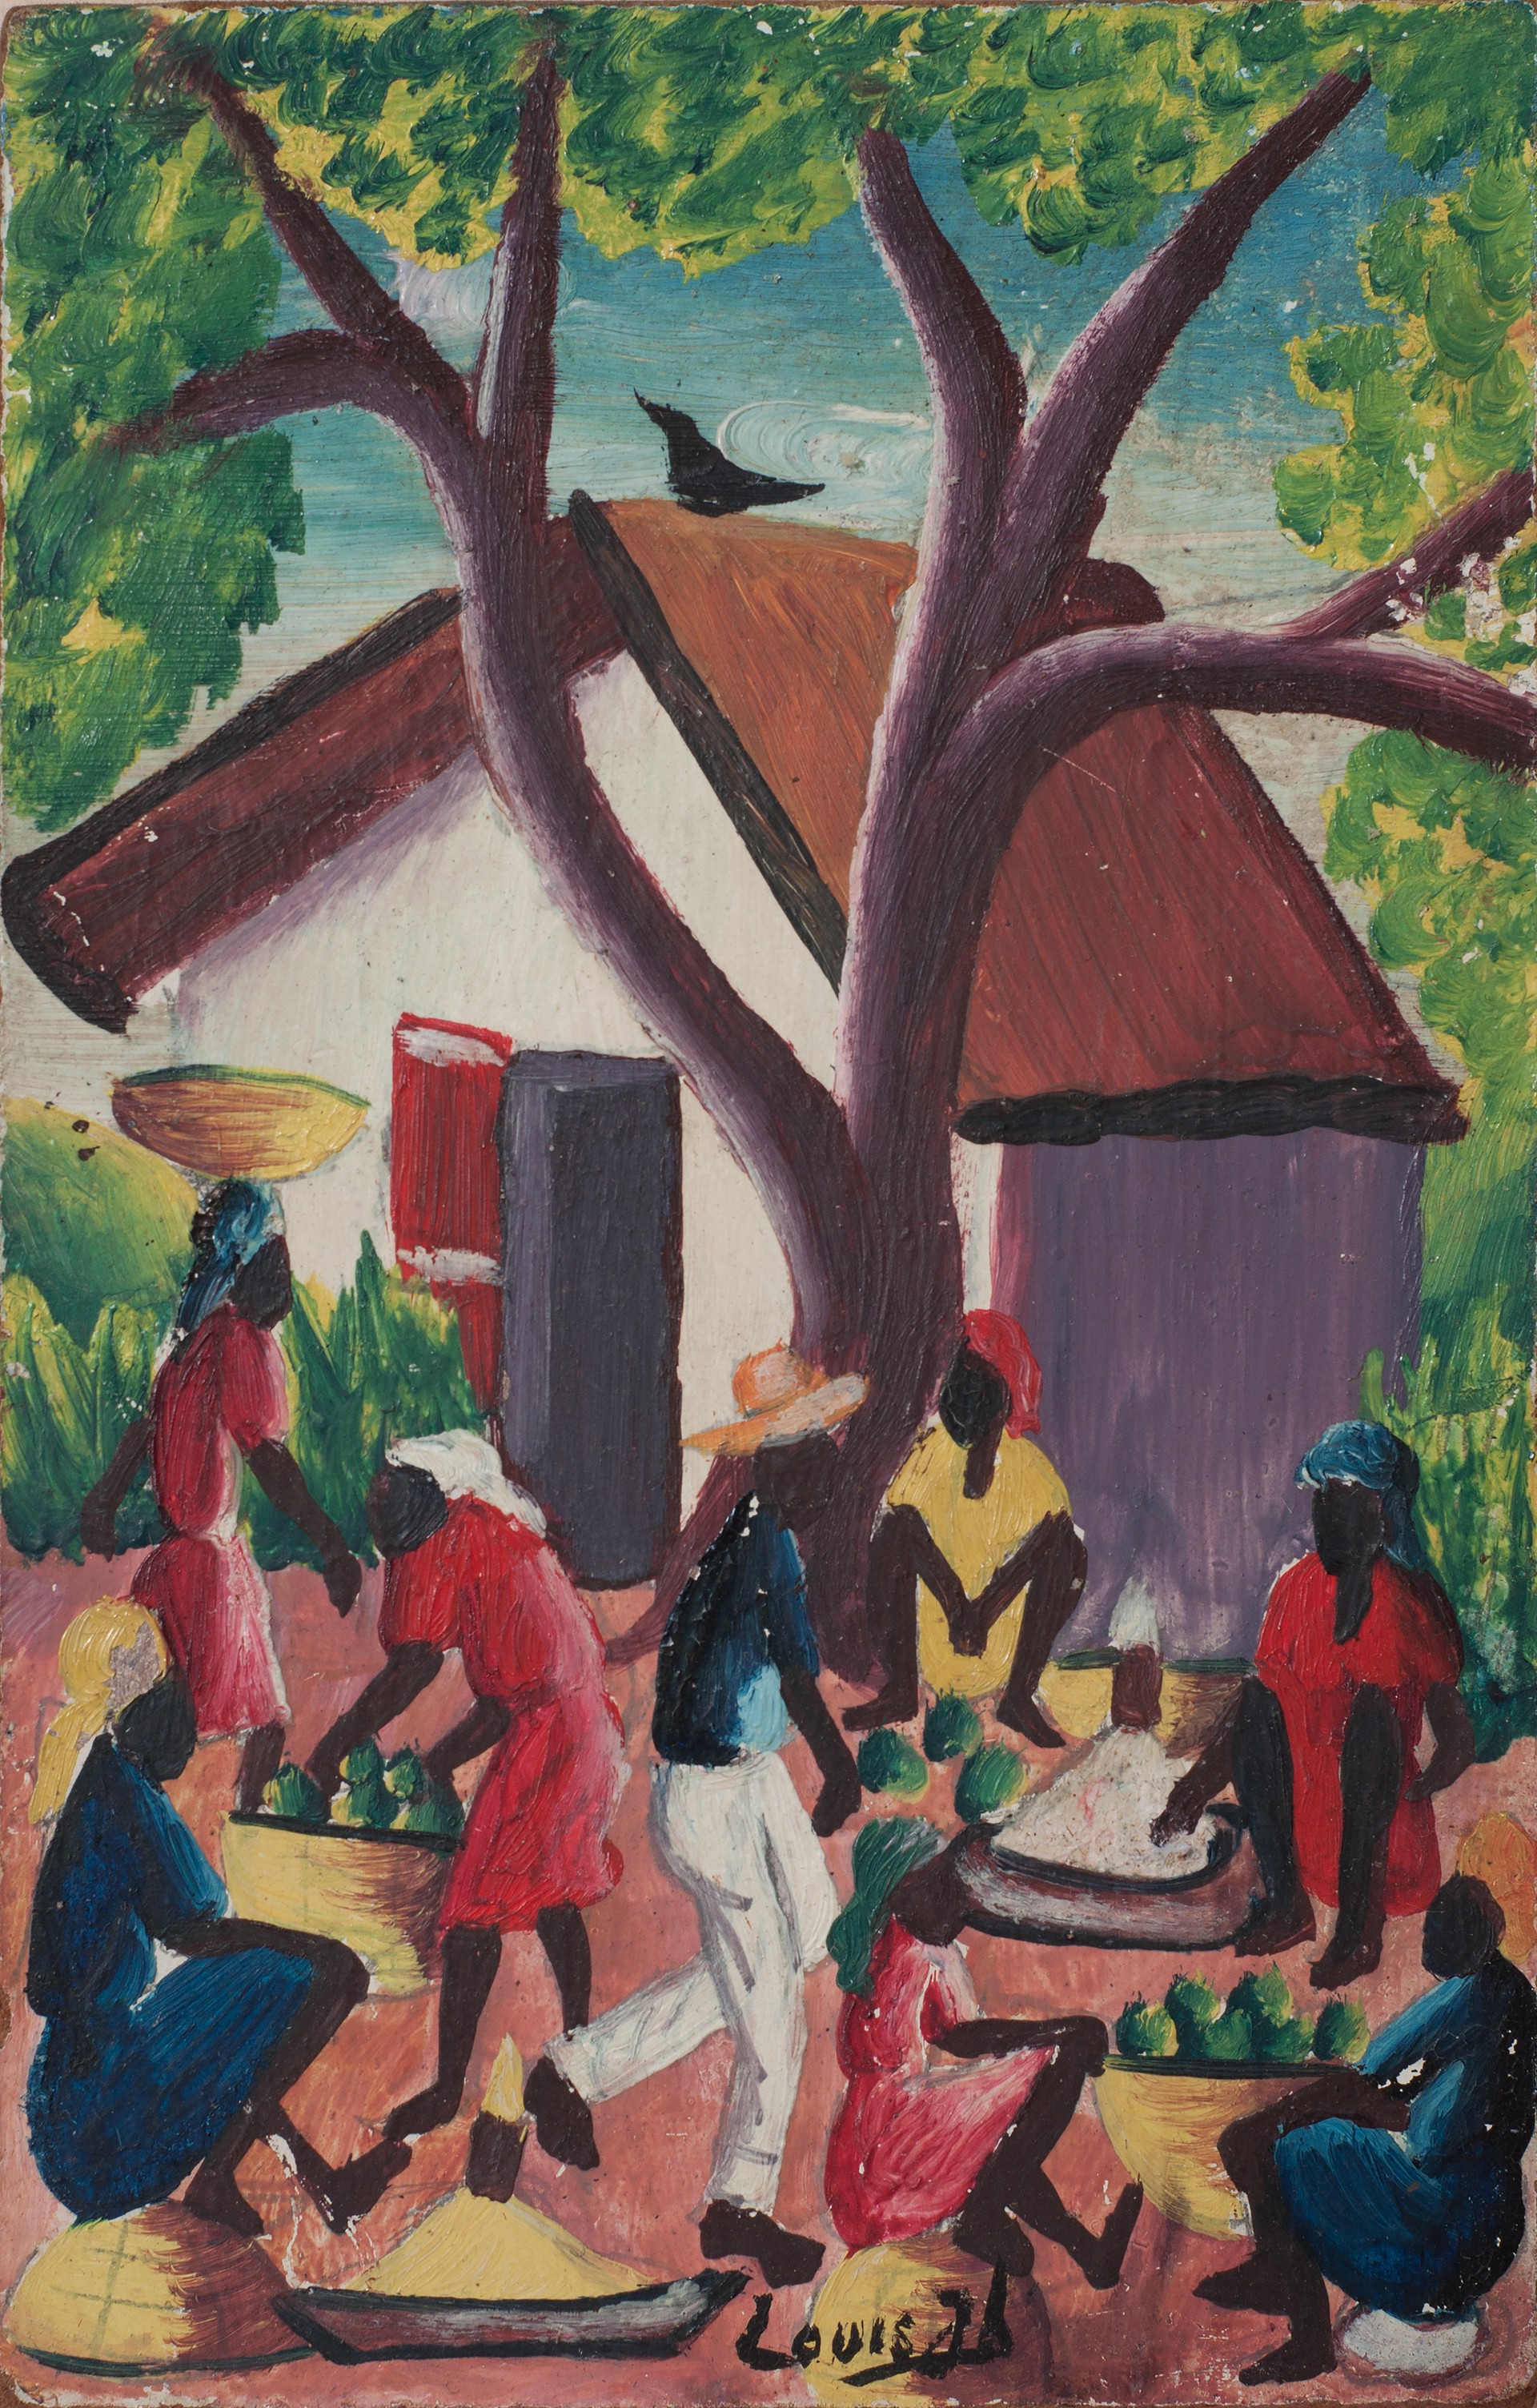 Street Market Scene #2GSN by Louis Joseph (Haitian, 1932)